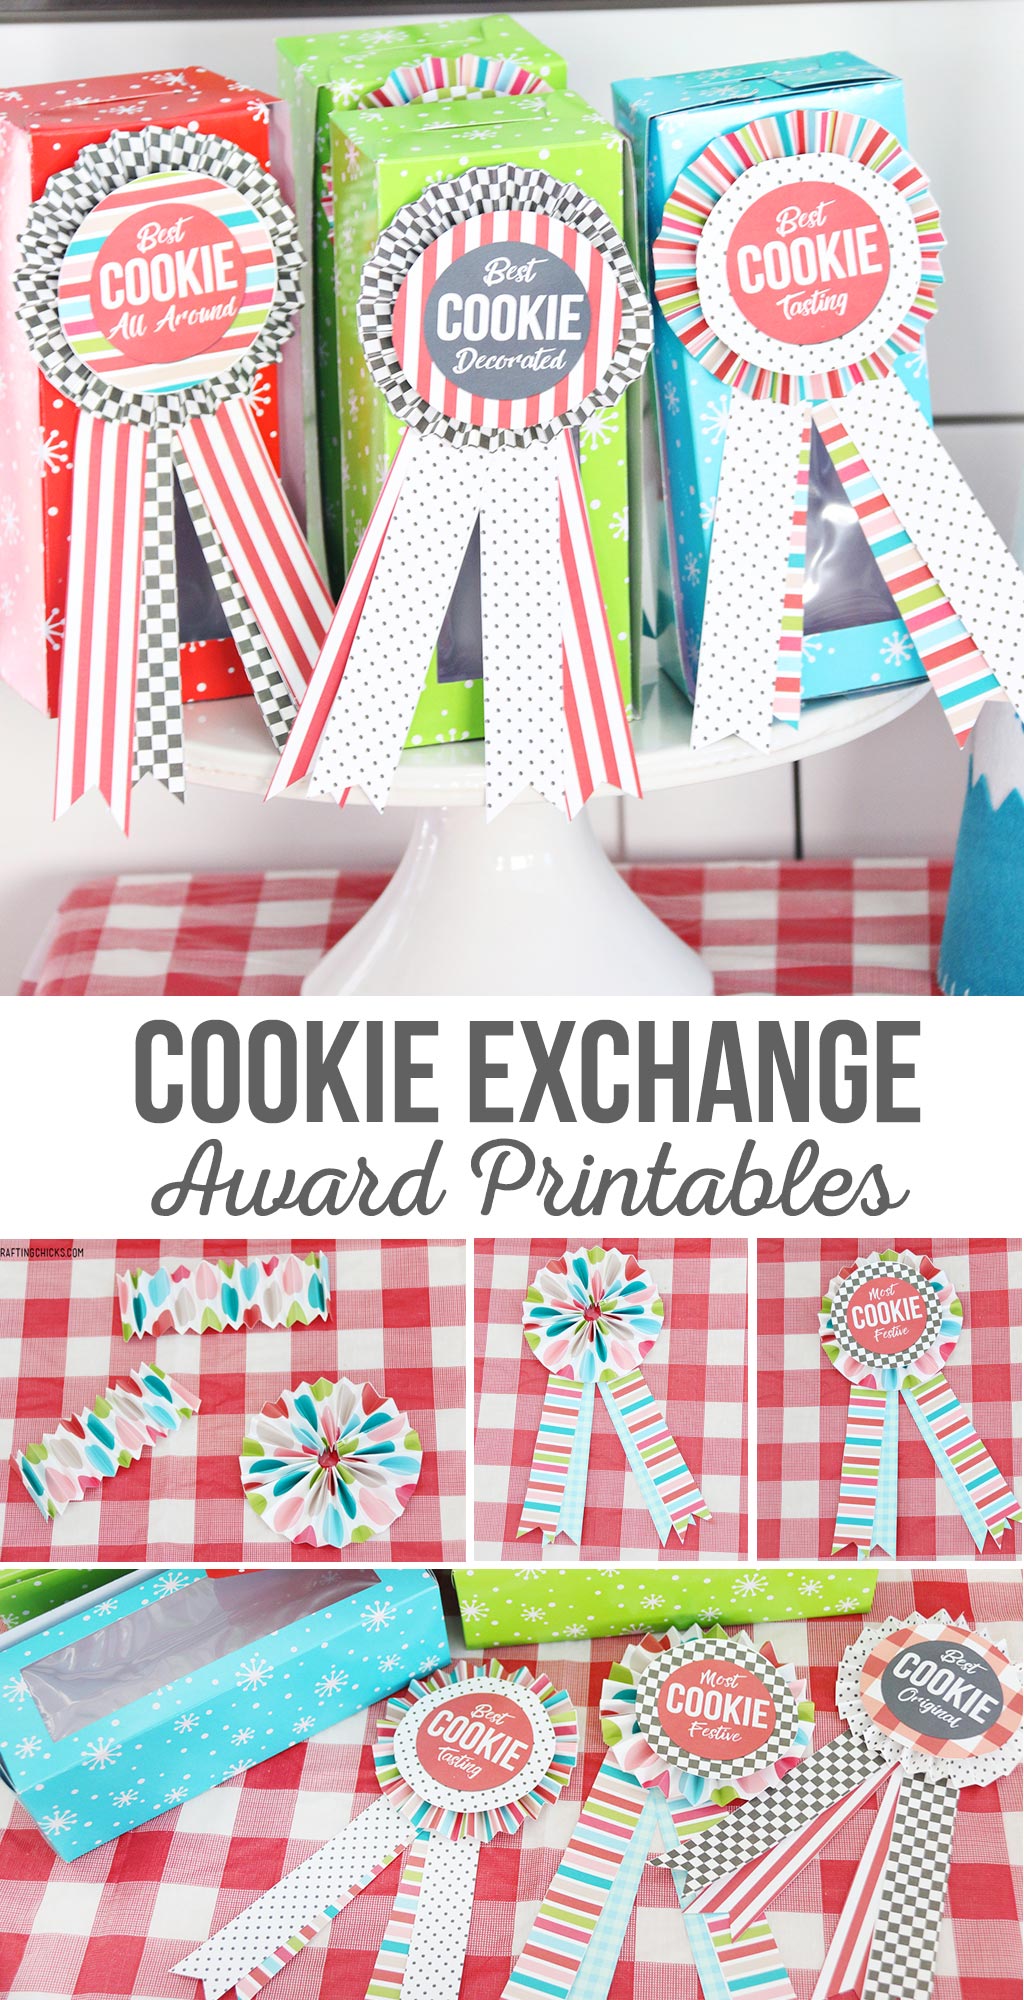 Cookie Exchange Award Printables